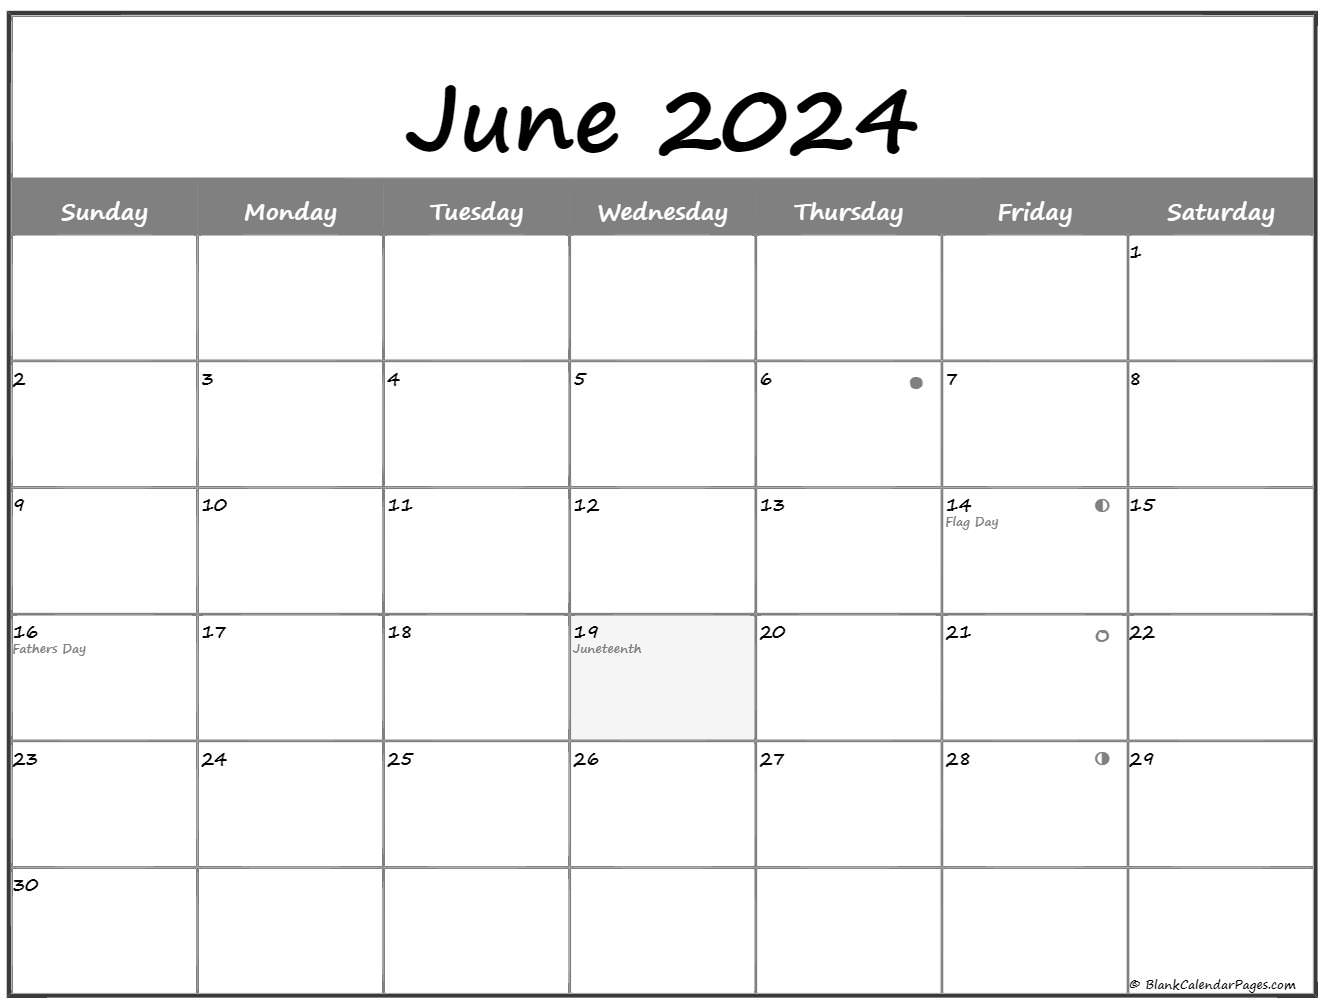 Moon Schedule June 2022 June 2022 Lunar Calendar | Moon Phase Calendar